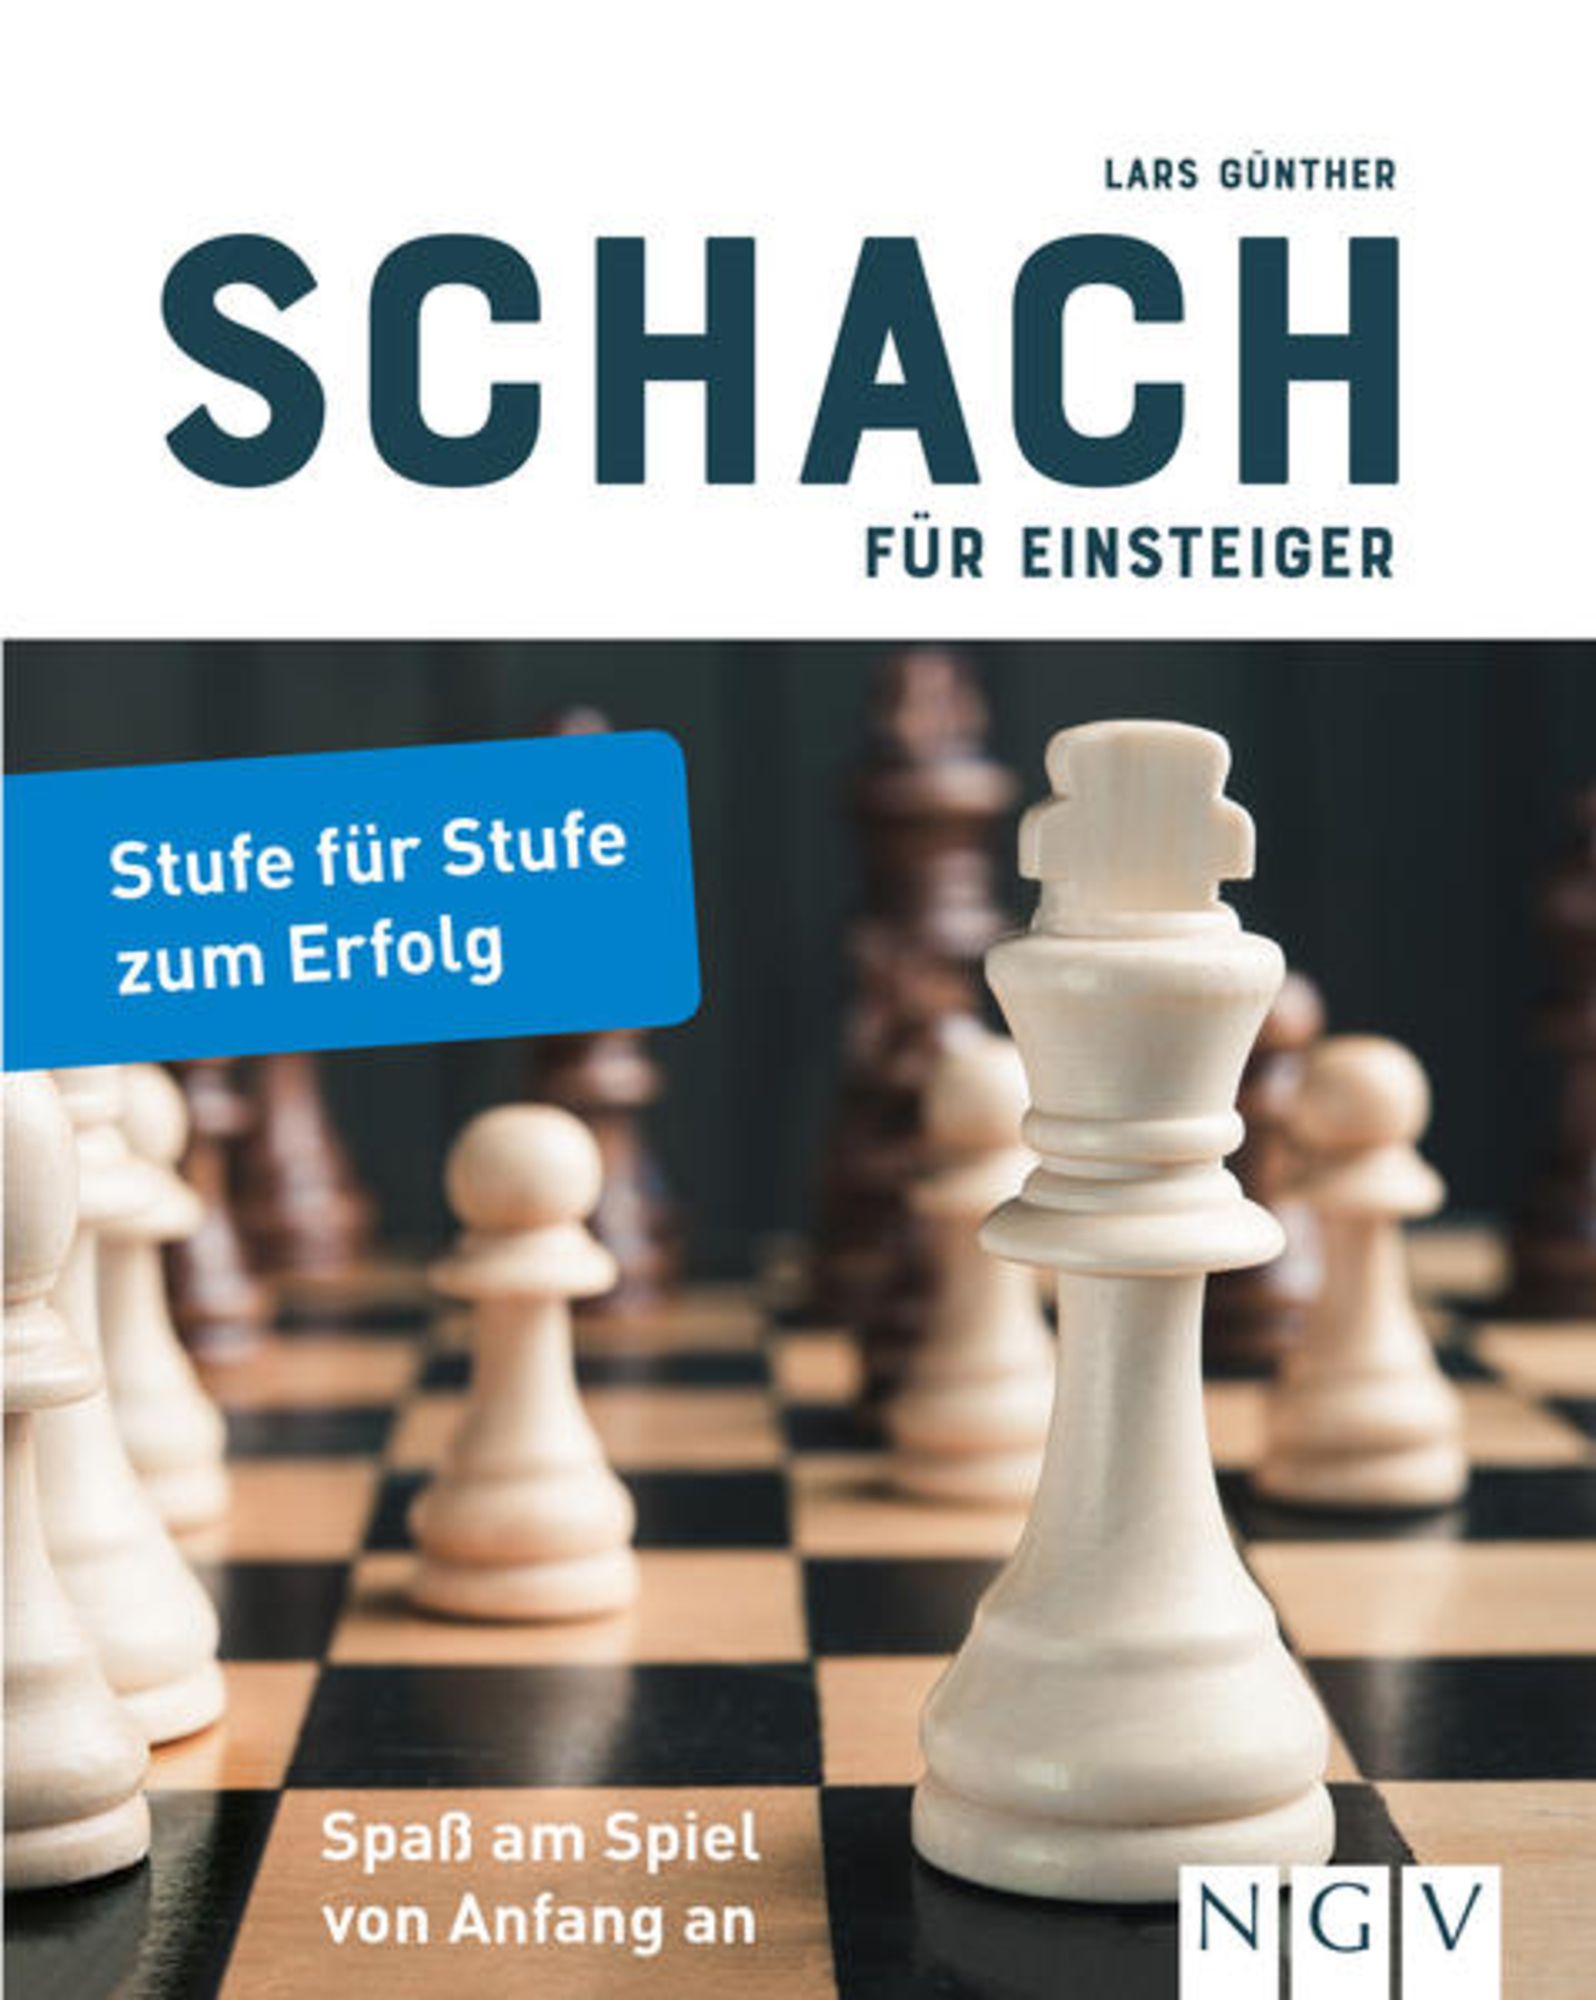 Schach für Einsteiger von Lars Günther - Buch